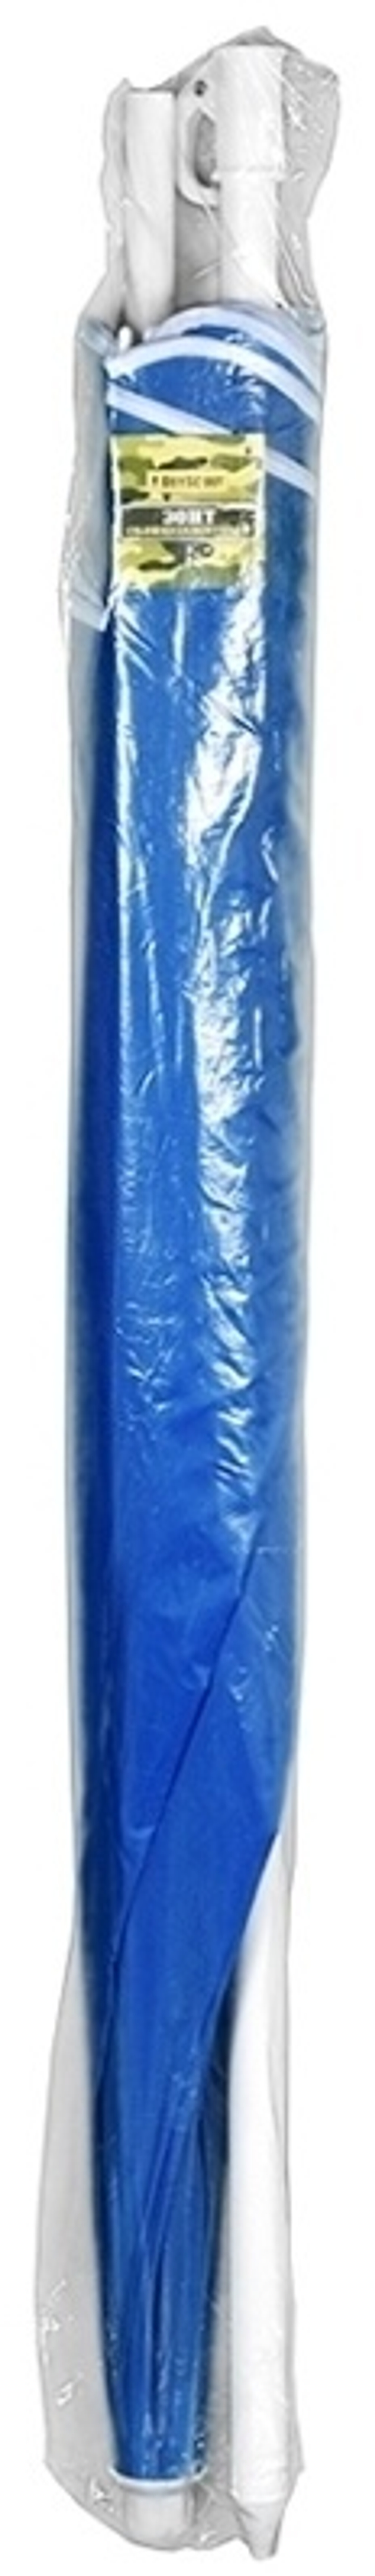 Складной зонт BOYSCOUT 61068 механика синий